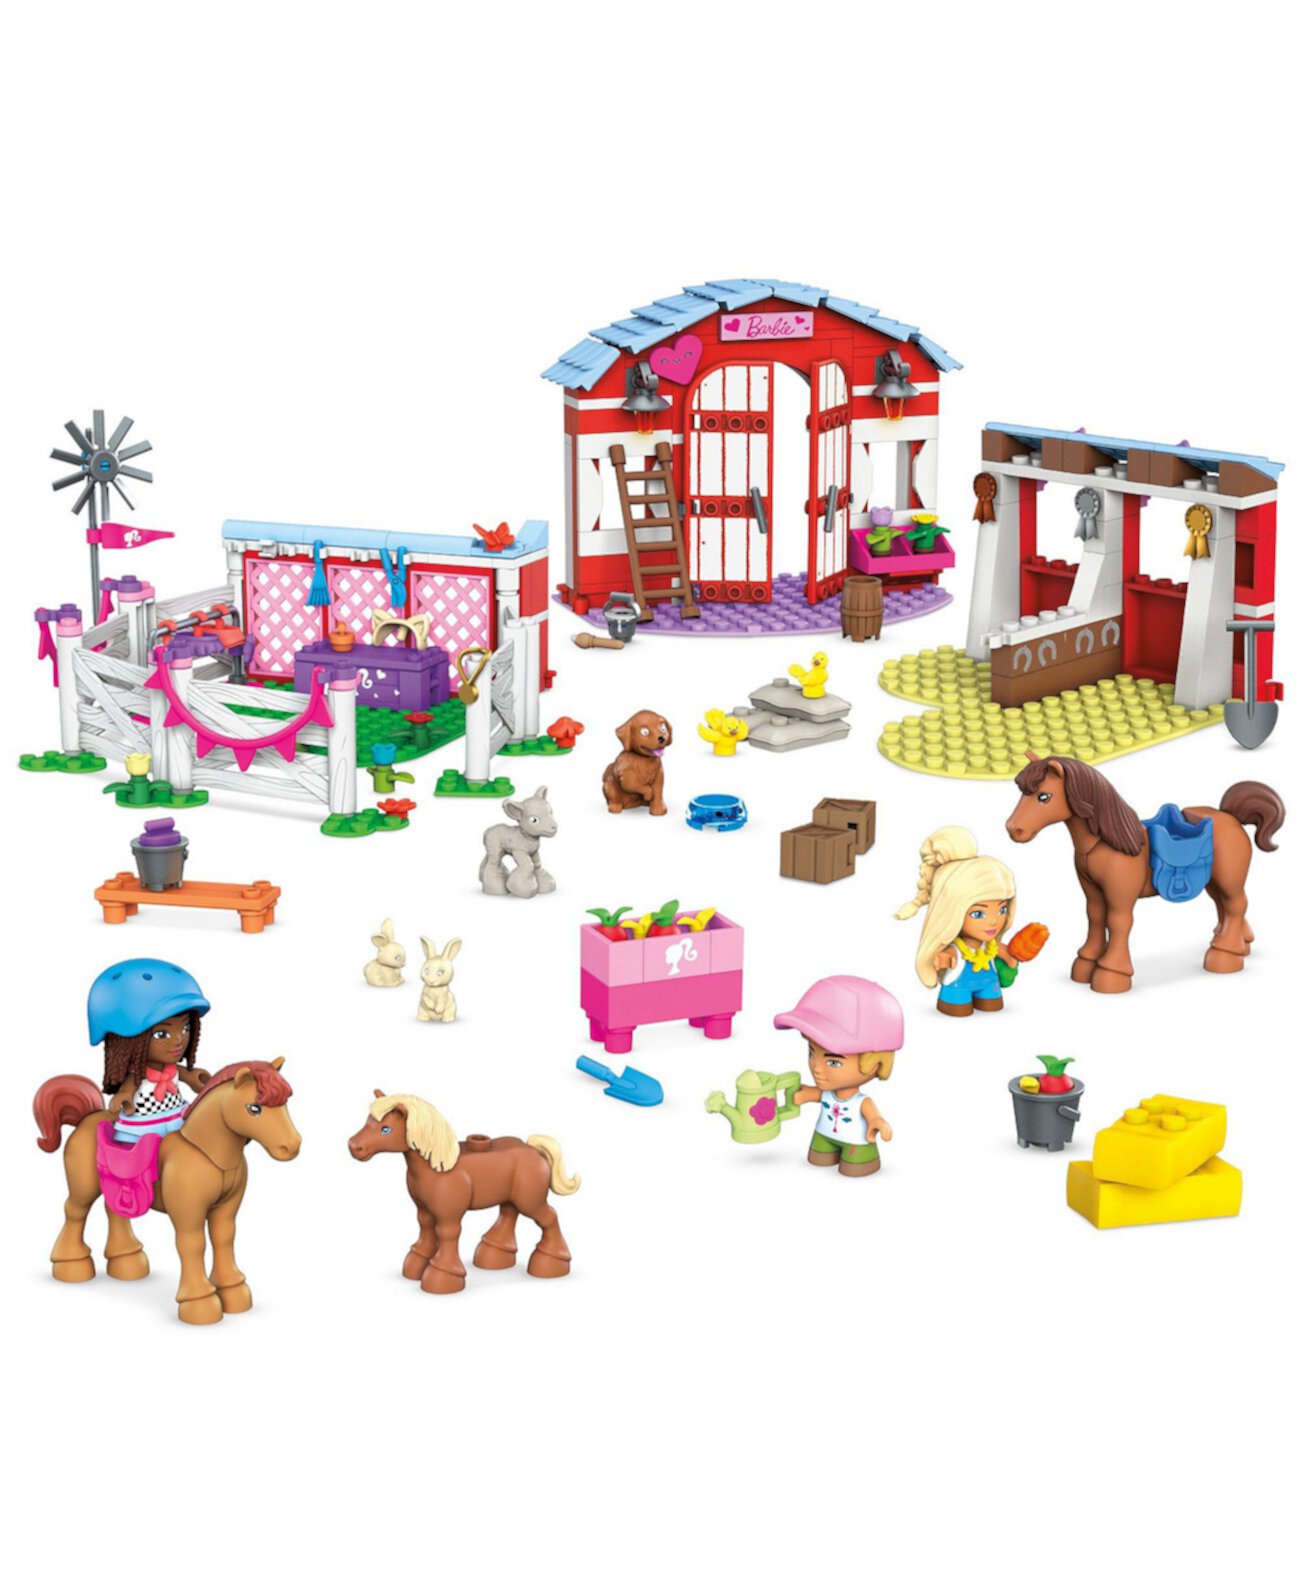 Игровой набор Barbie Pets Horse Stables Building с 3 микрокуклами и 9 питомцами Mega Construx